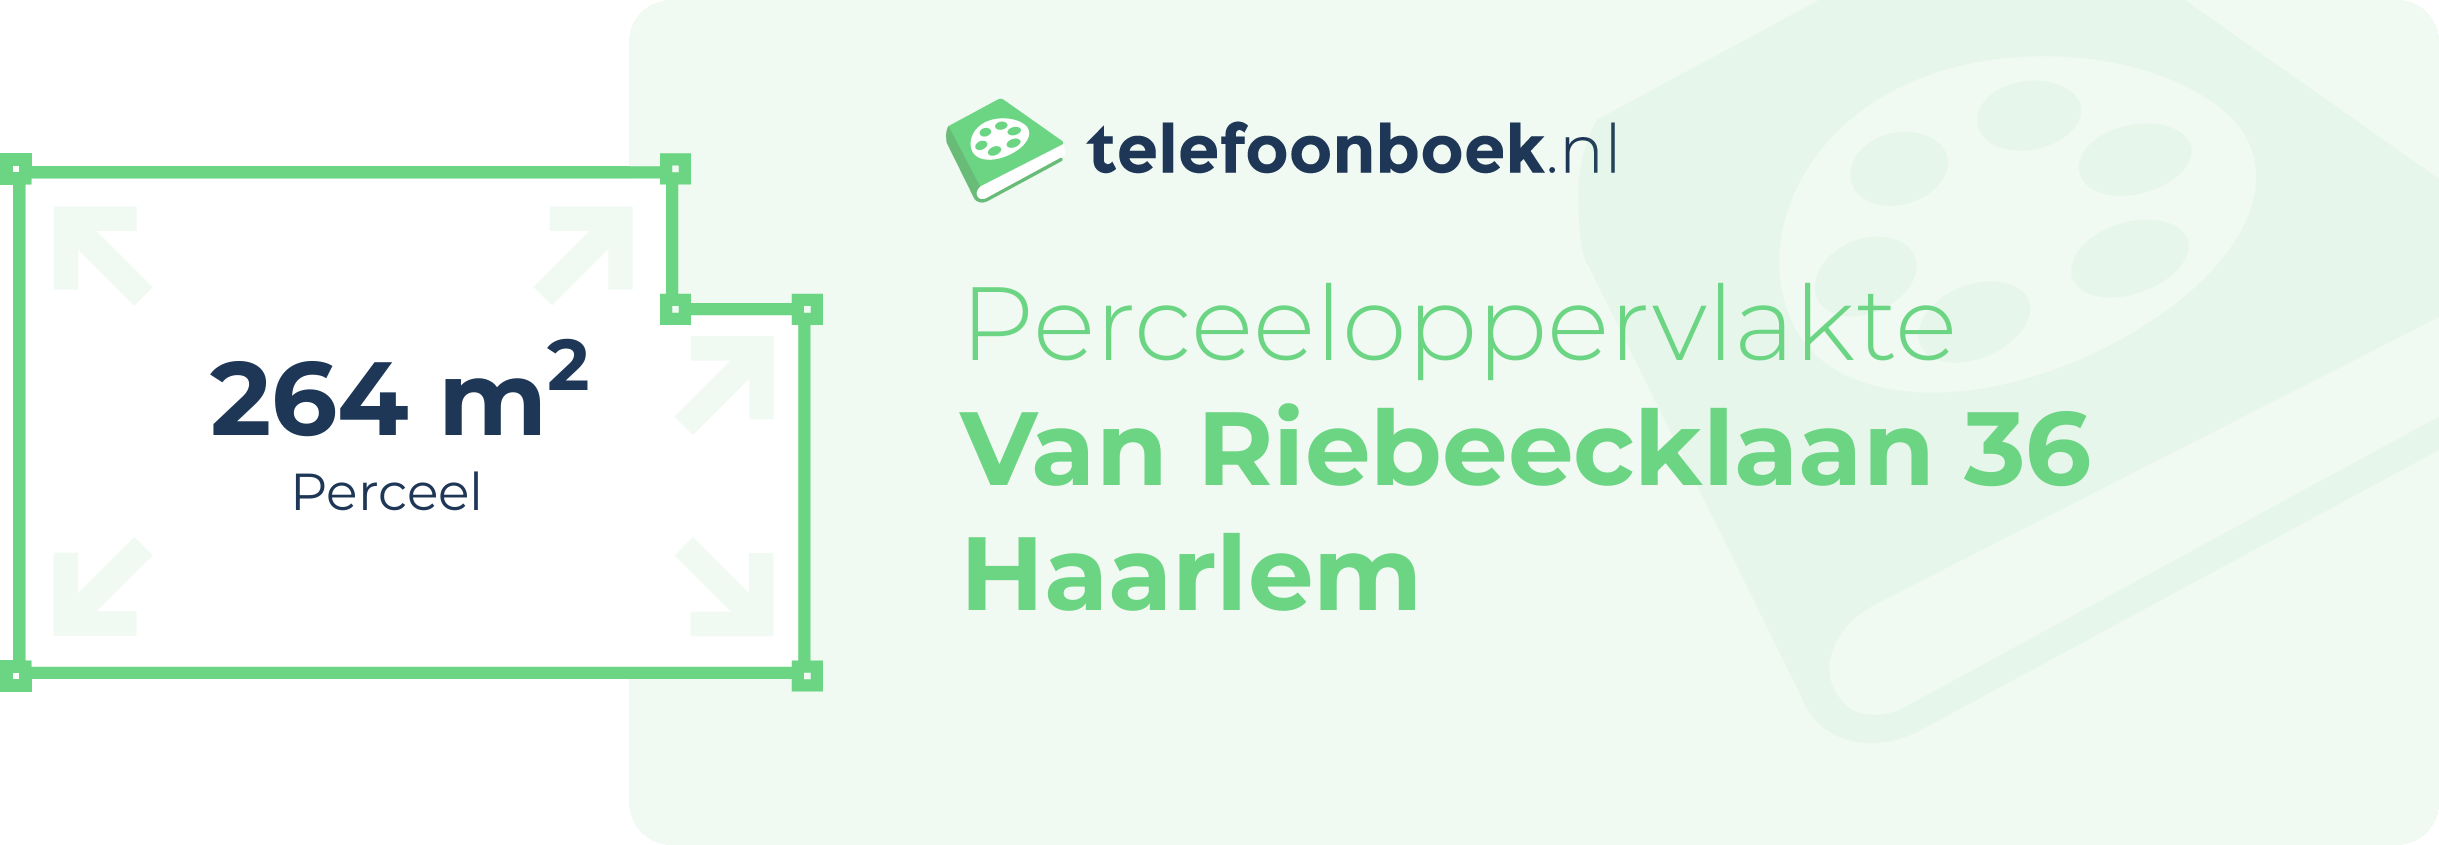 Perceeloppervlakte Van Riebeecklaan 36 Haarlem